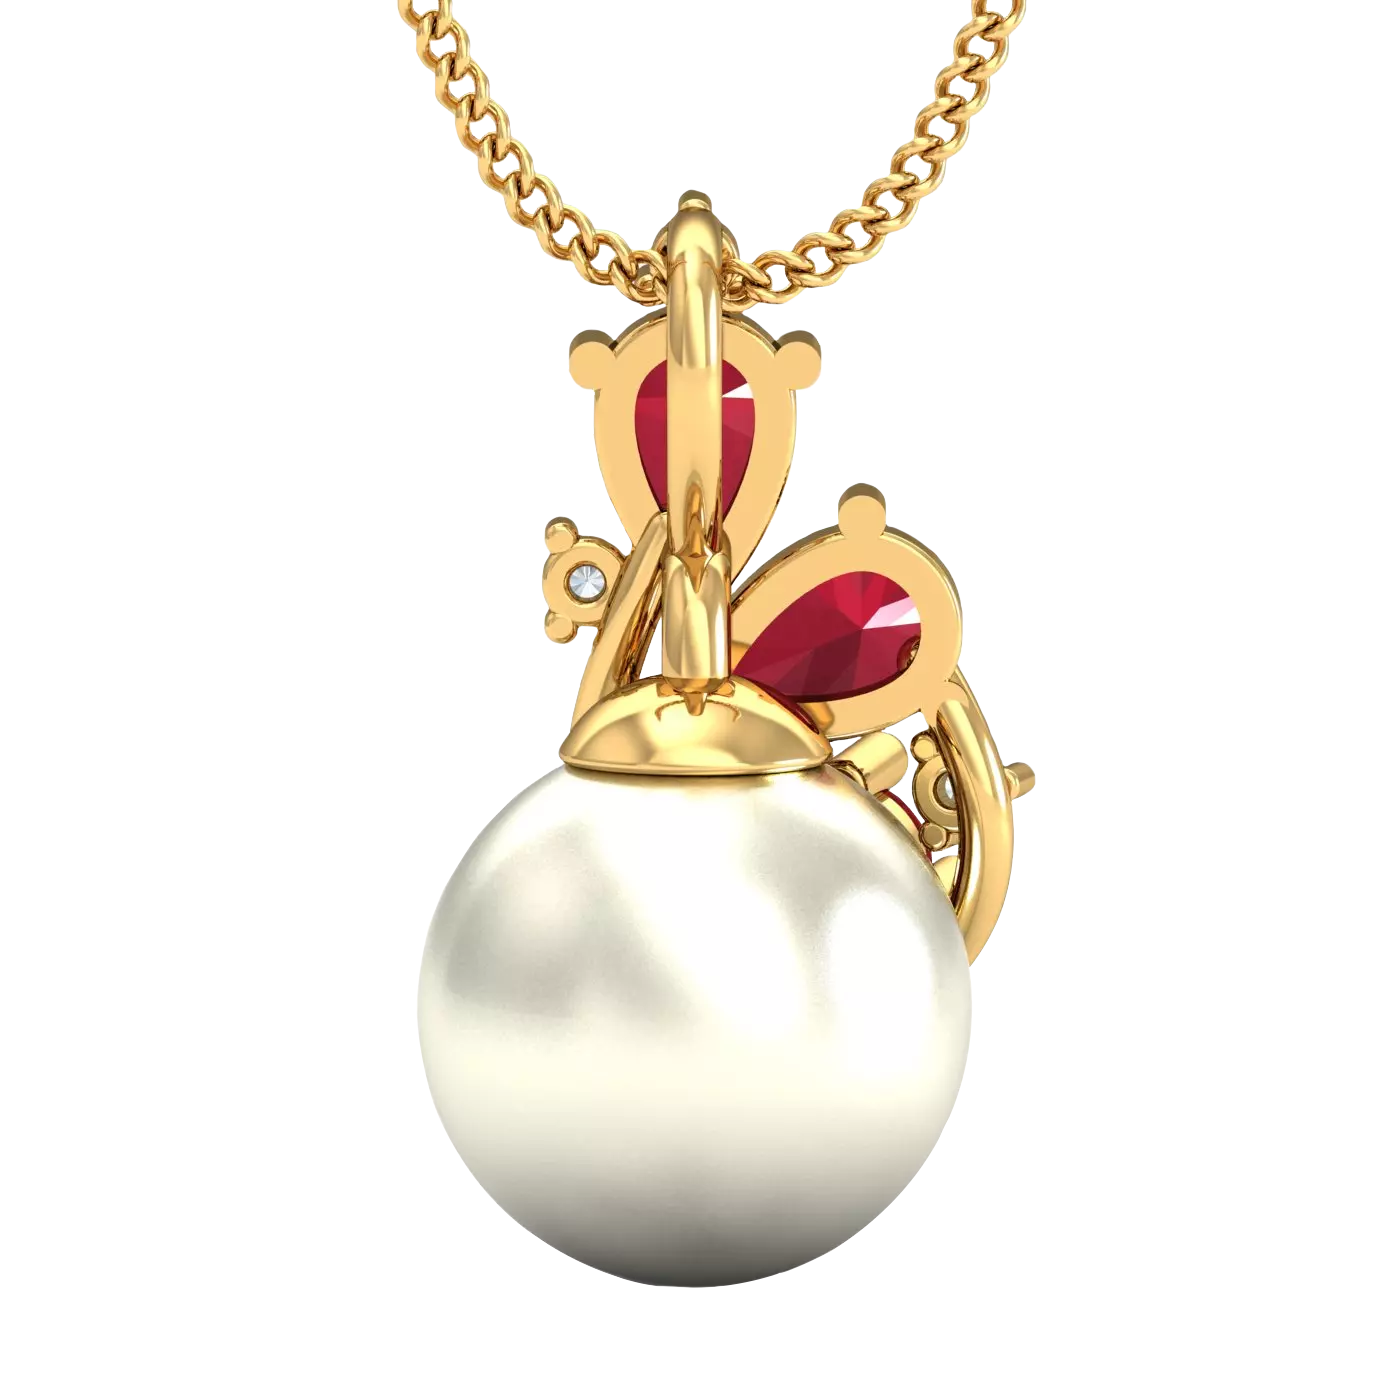 The Sereno Ruby Pearl Pendant